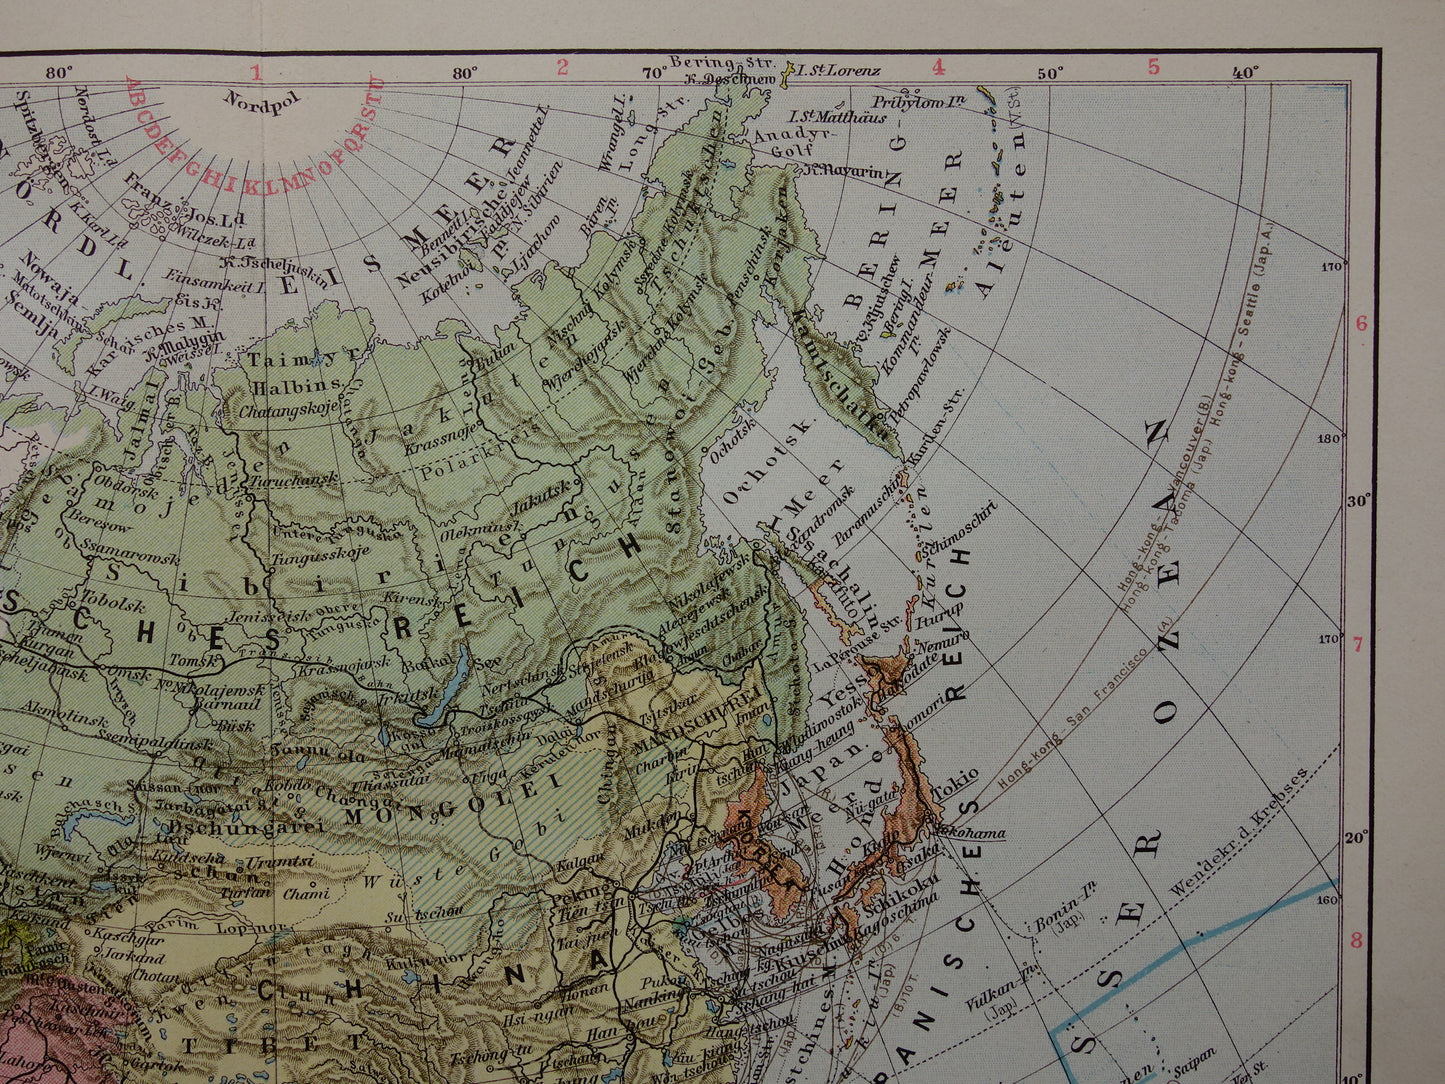 AZIË oude landkaart van continent Azië uit 1913 originele antieke kaart